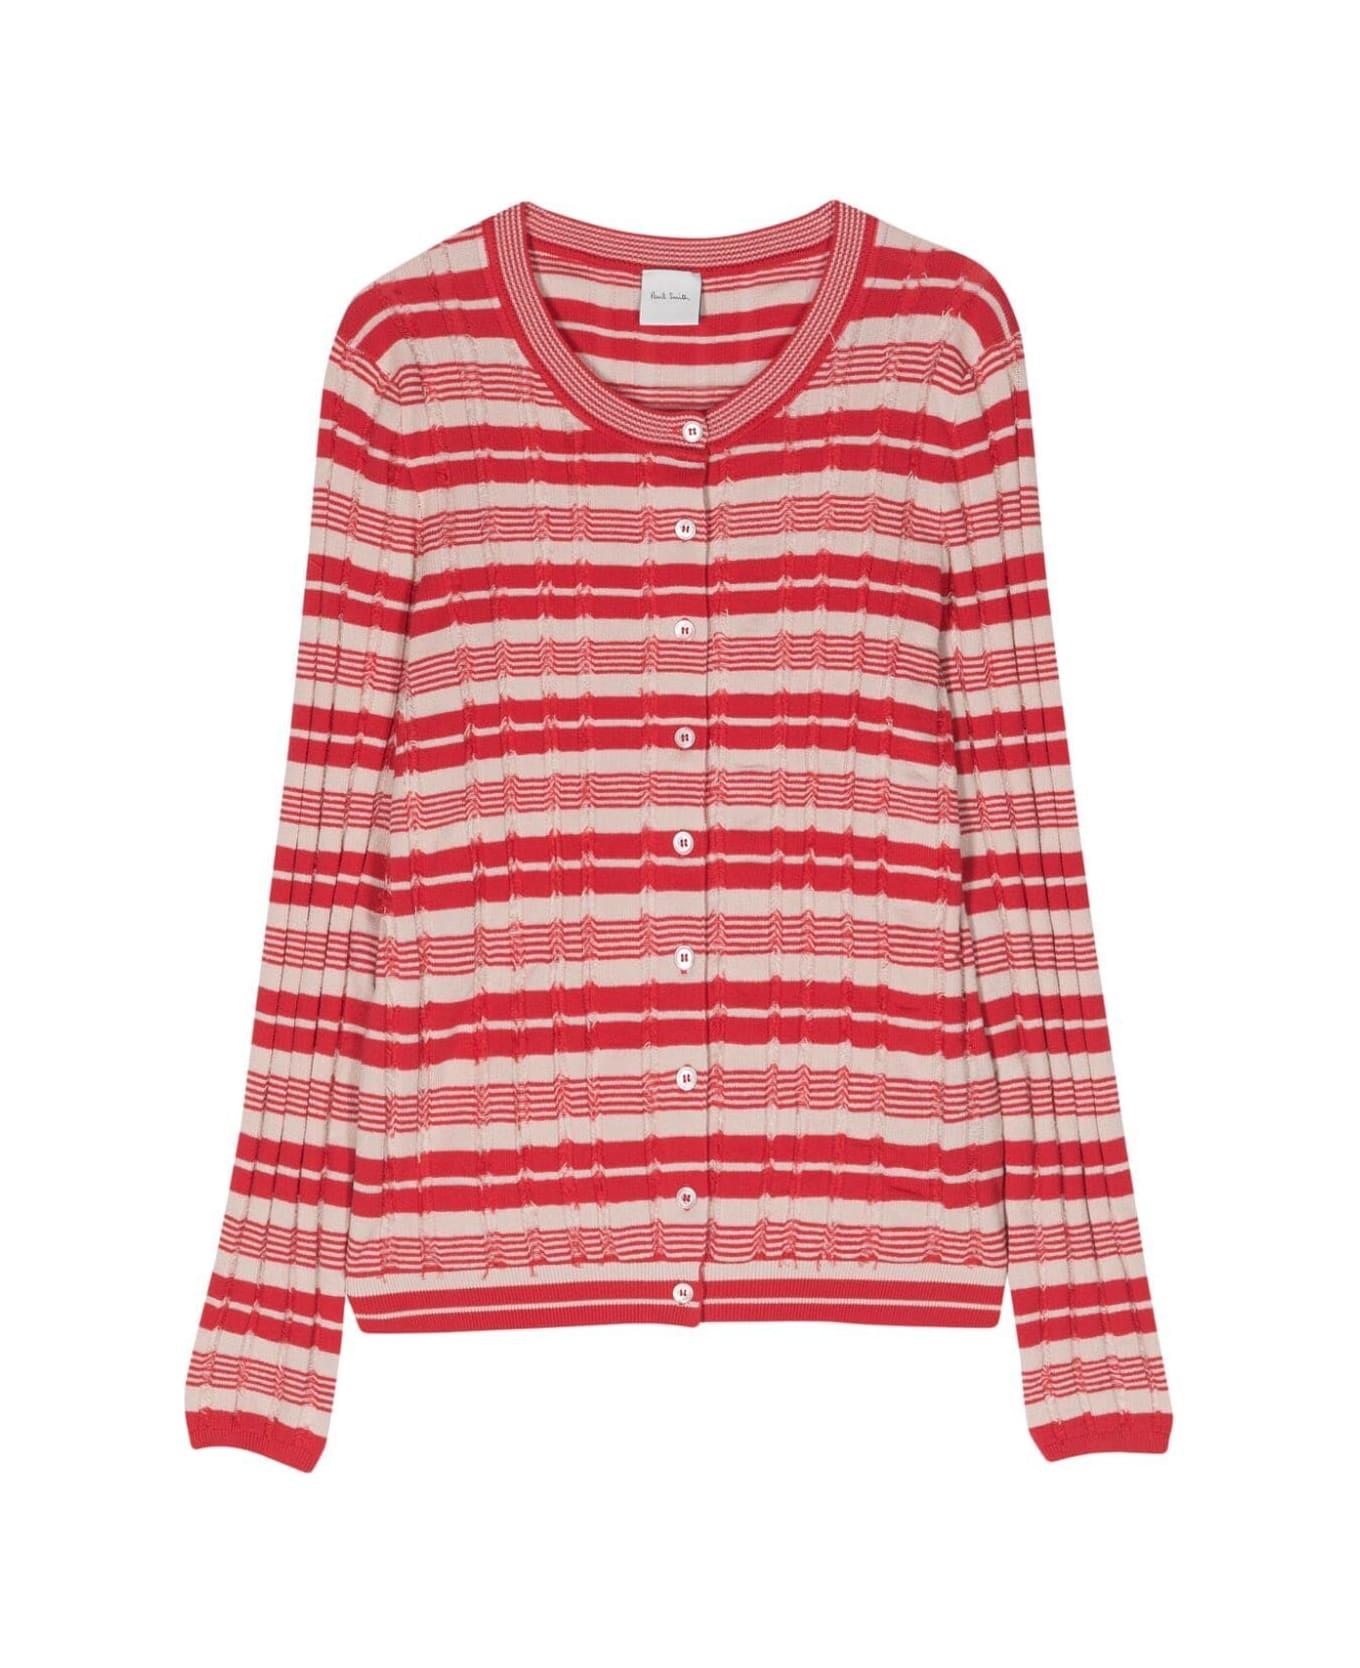 Paul Smith Long Sleeves Striped Korean Sweater - Red ニットウェア